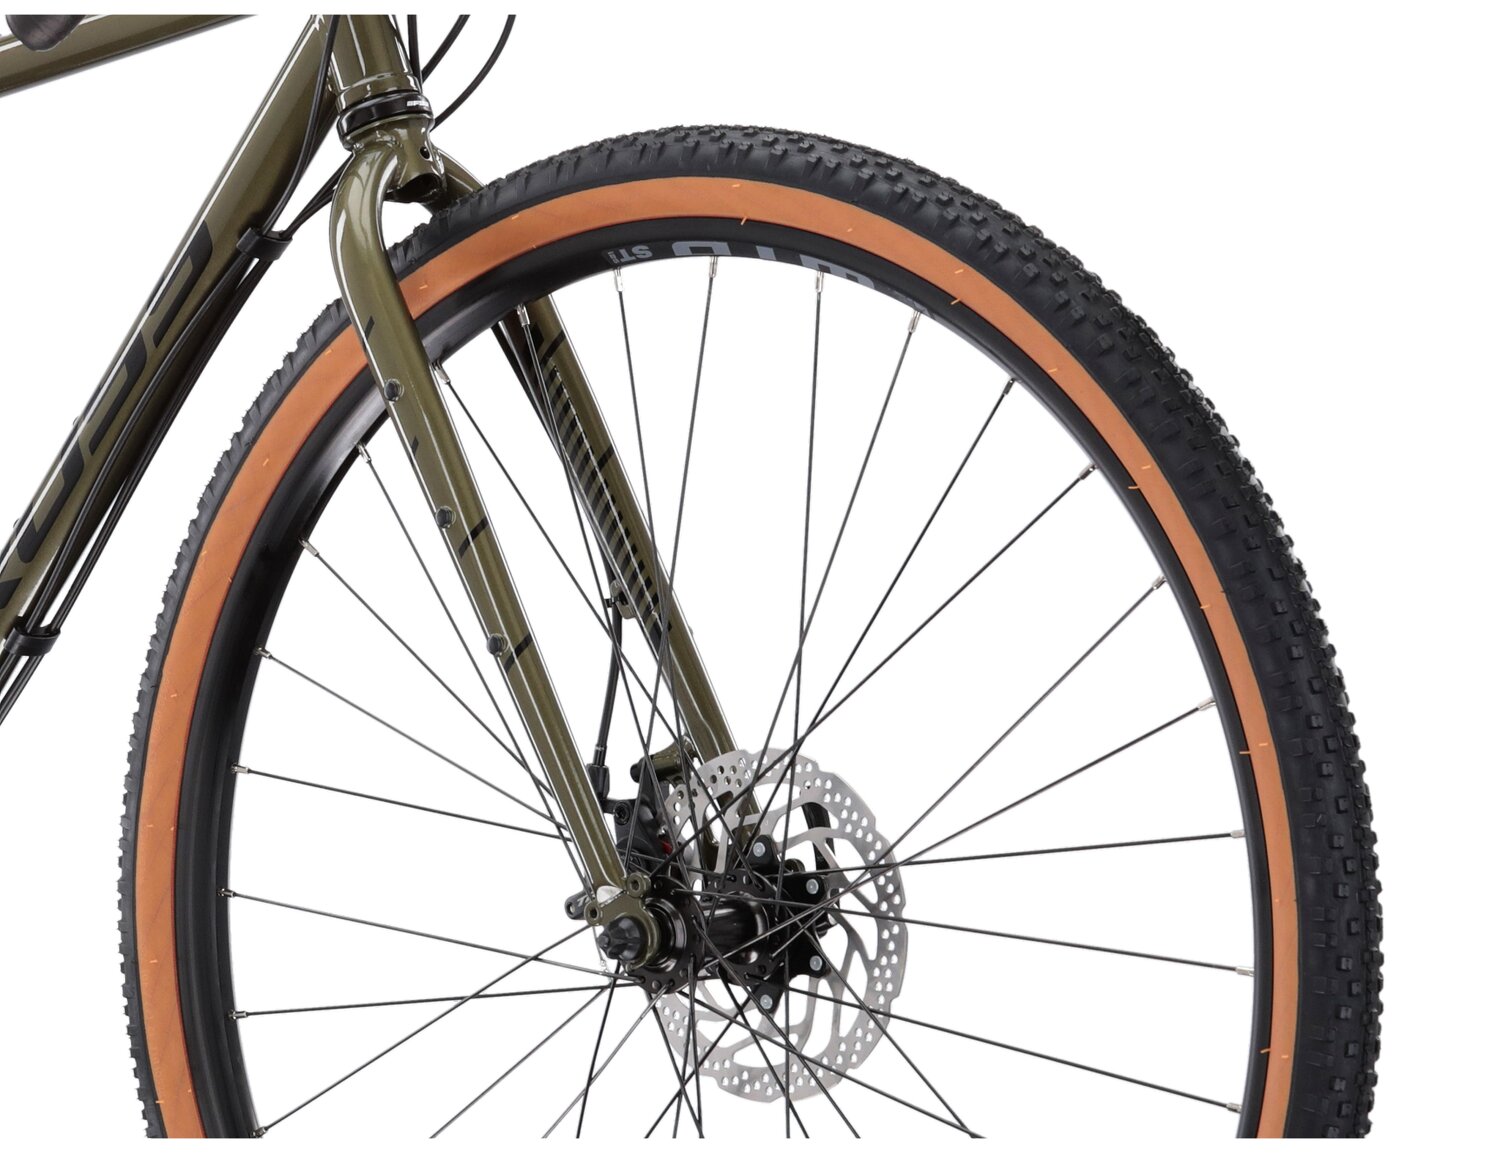  Stalowa rama, sztywny stalowy widelec i opony 28 cali w rowerze gravelowym Kross Esker 4.0 